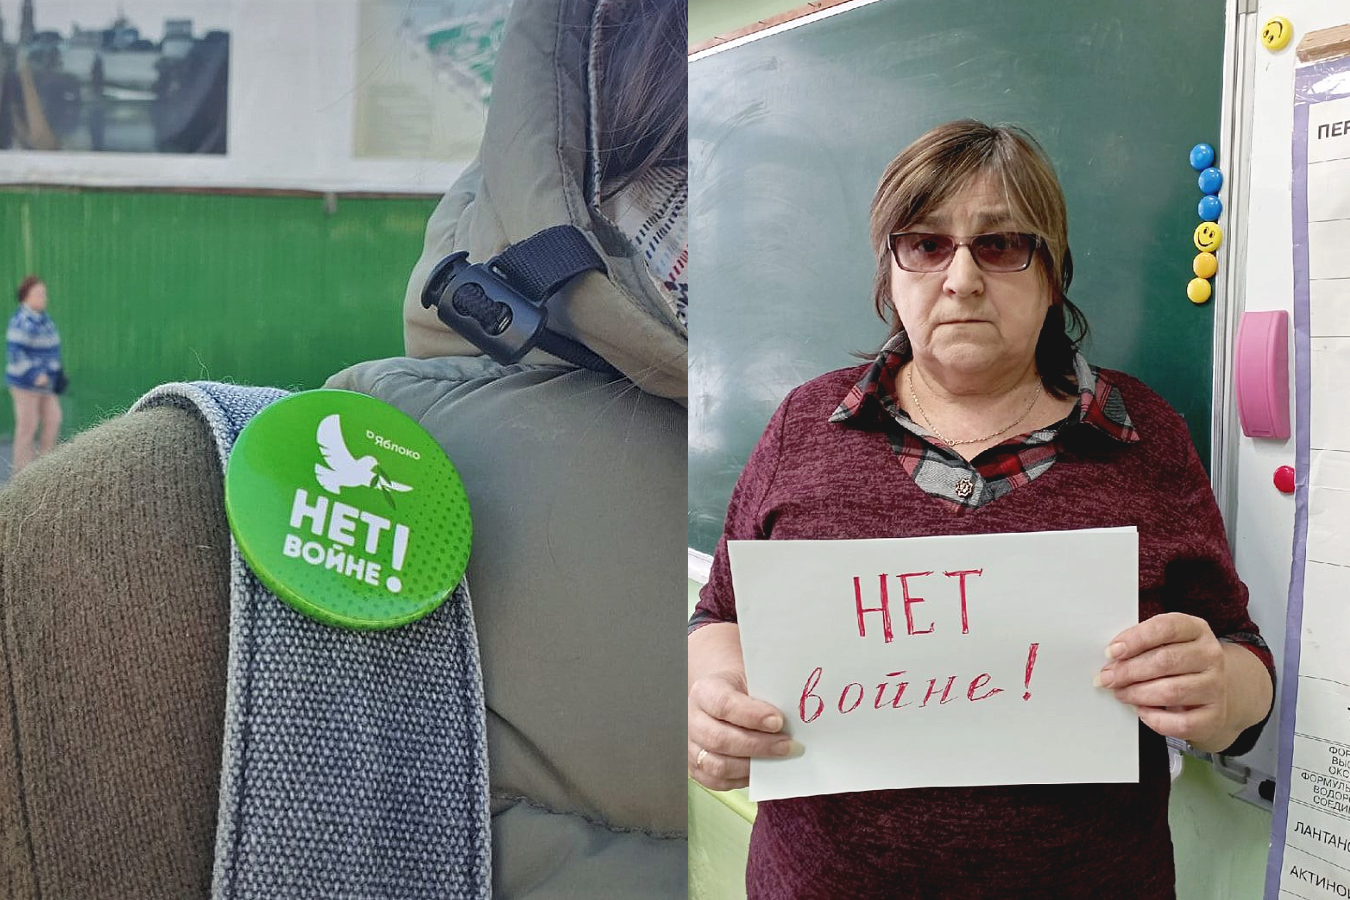 Полина Баринова, задержанная из-за значка «Нет войне», и учительница Любовь Жильцова, оштрафованная за фото с плакатом / Фото от задержанной и из соцсетей учительницы